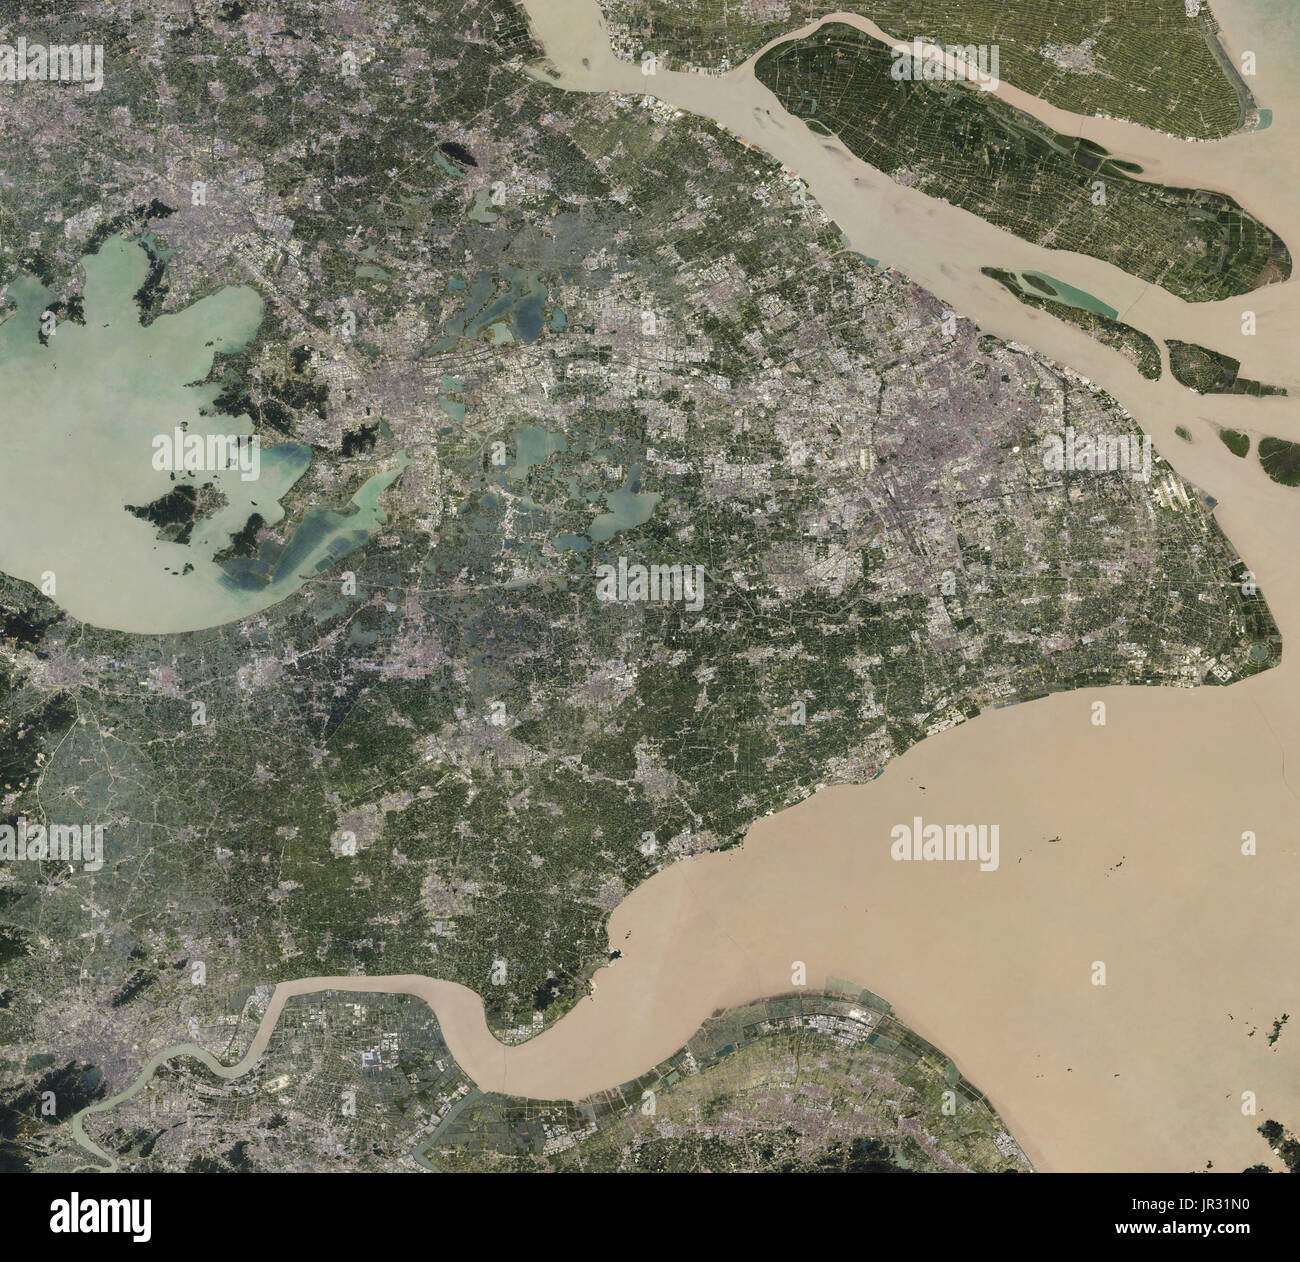 Shanghai, Chine, capturés par l'Imageur Terres opérationnelles (OLI) sur Landsat 8 entre 2013 et 2017. Comparer avec jg5370, montrant Shanghai à partir de la fin des années 1980. Banque D'Images